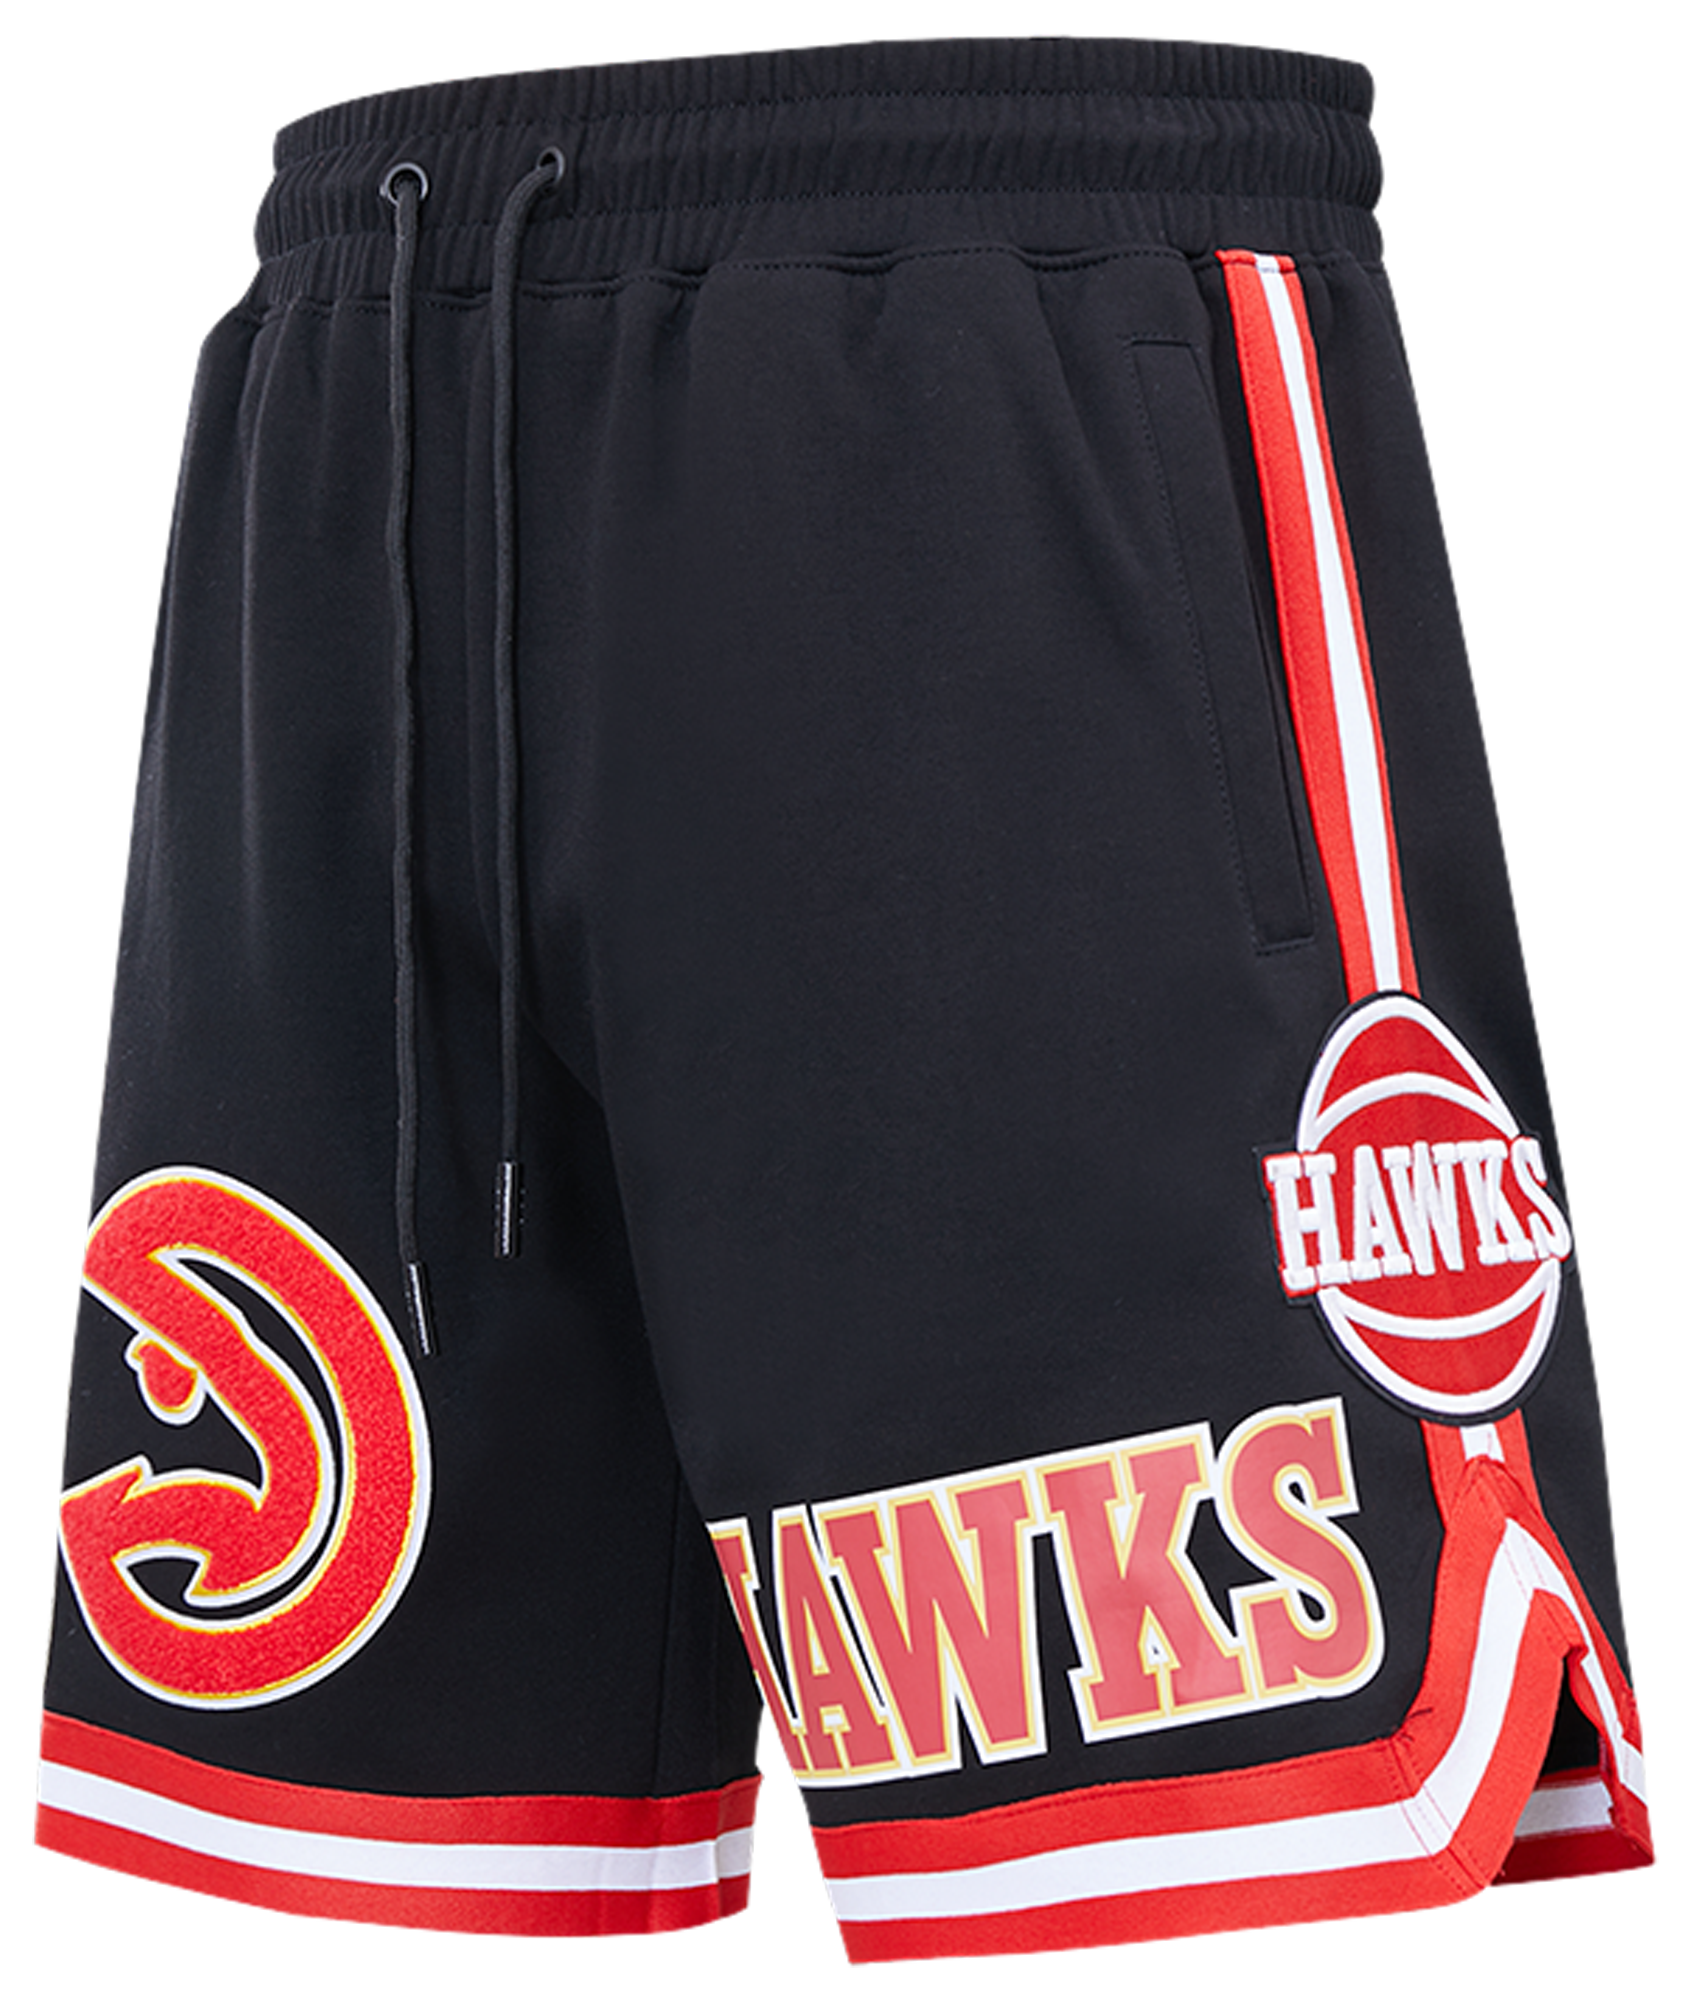 Pro Standard Hawks NBA Team Shorts